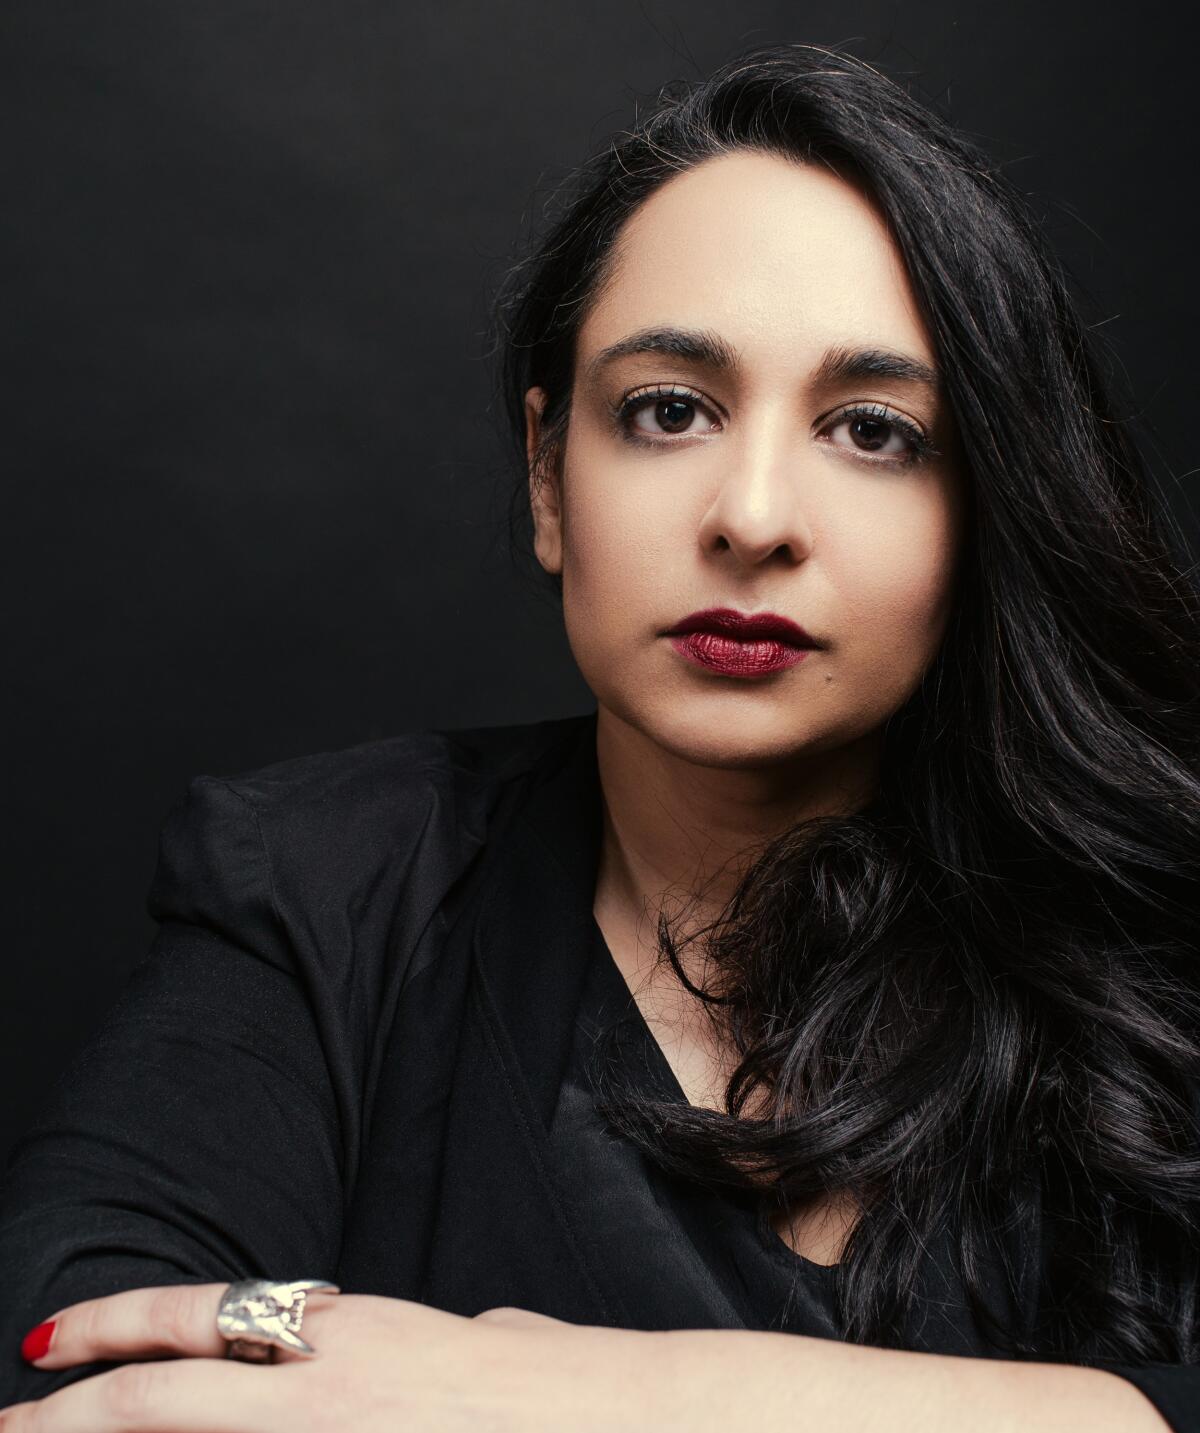 Author Amina Akhtar looks straight into the camera.